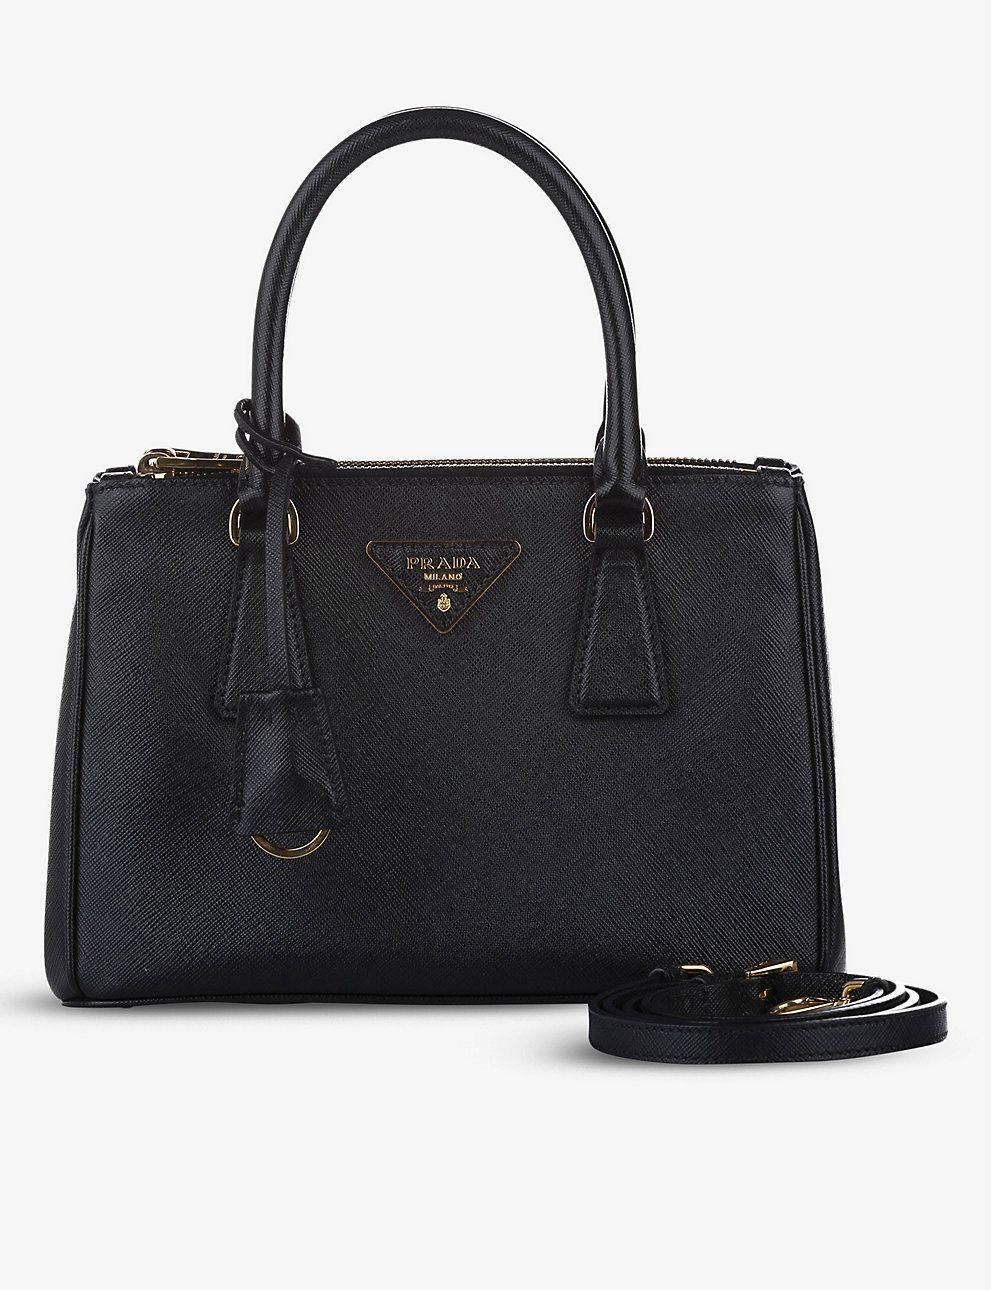 Pre-loved Prada Galleria leather satchel | Selfridges